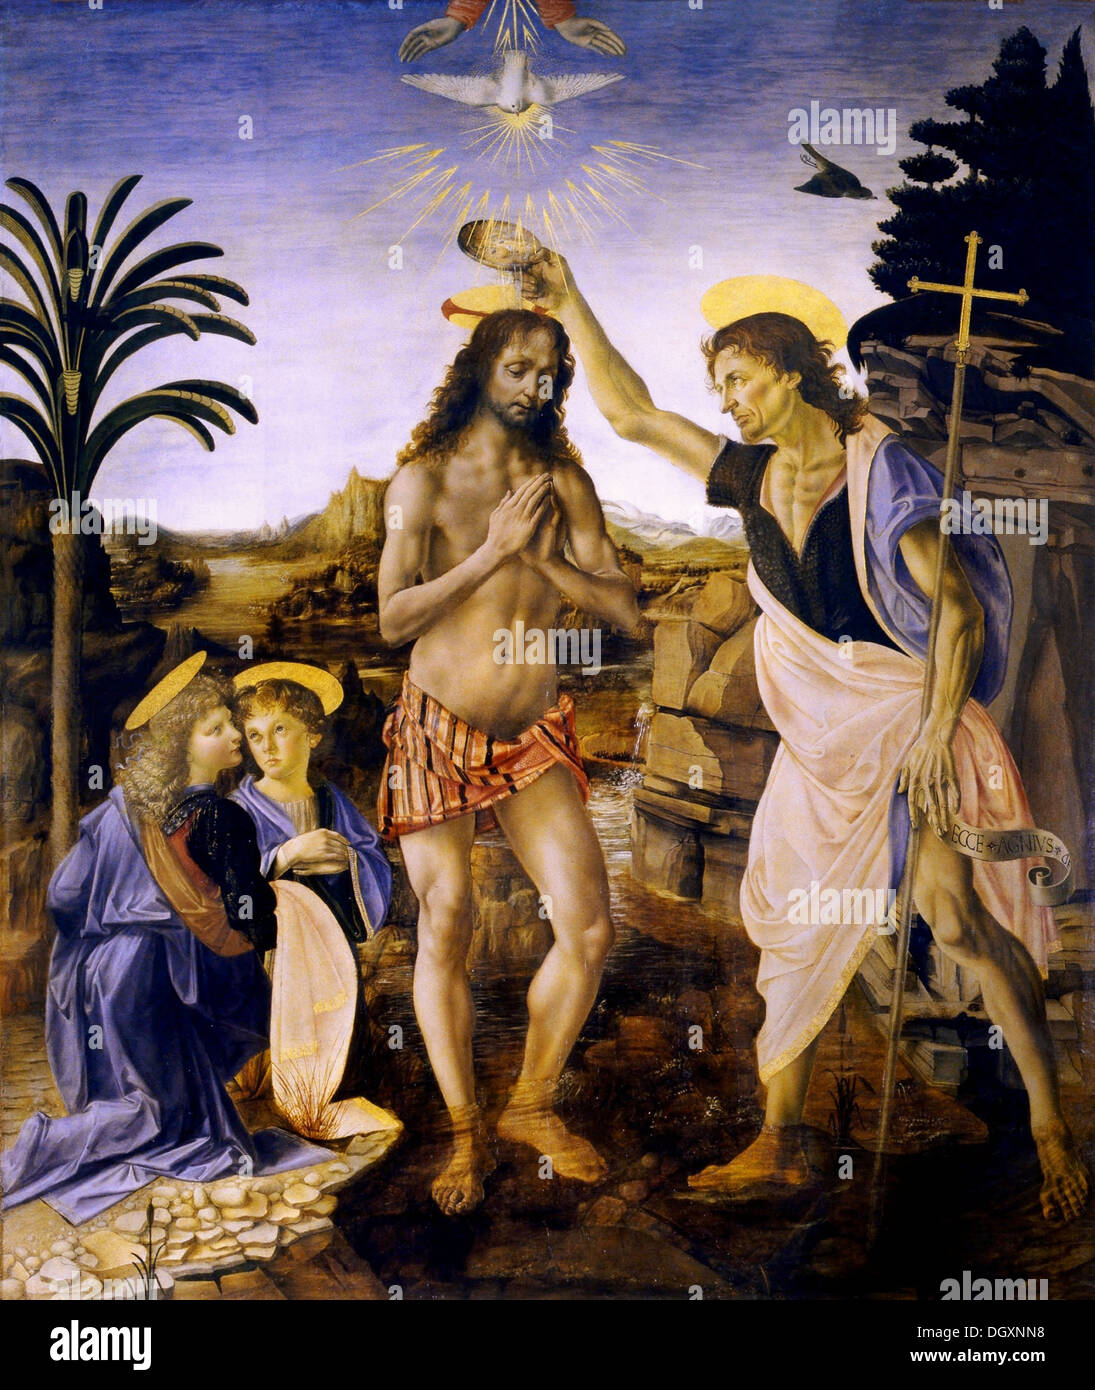 Verrocchio, Leonardo da Vinci - Il battesimo di Cristo, 1475 Foto Stock